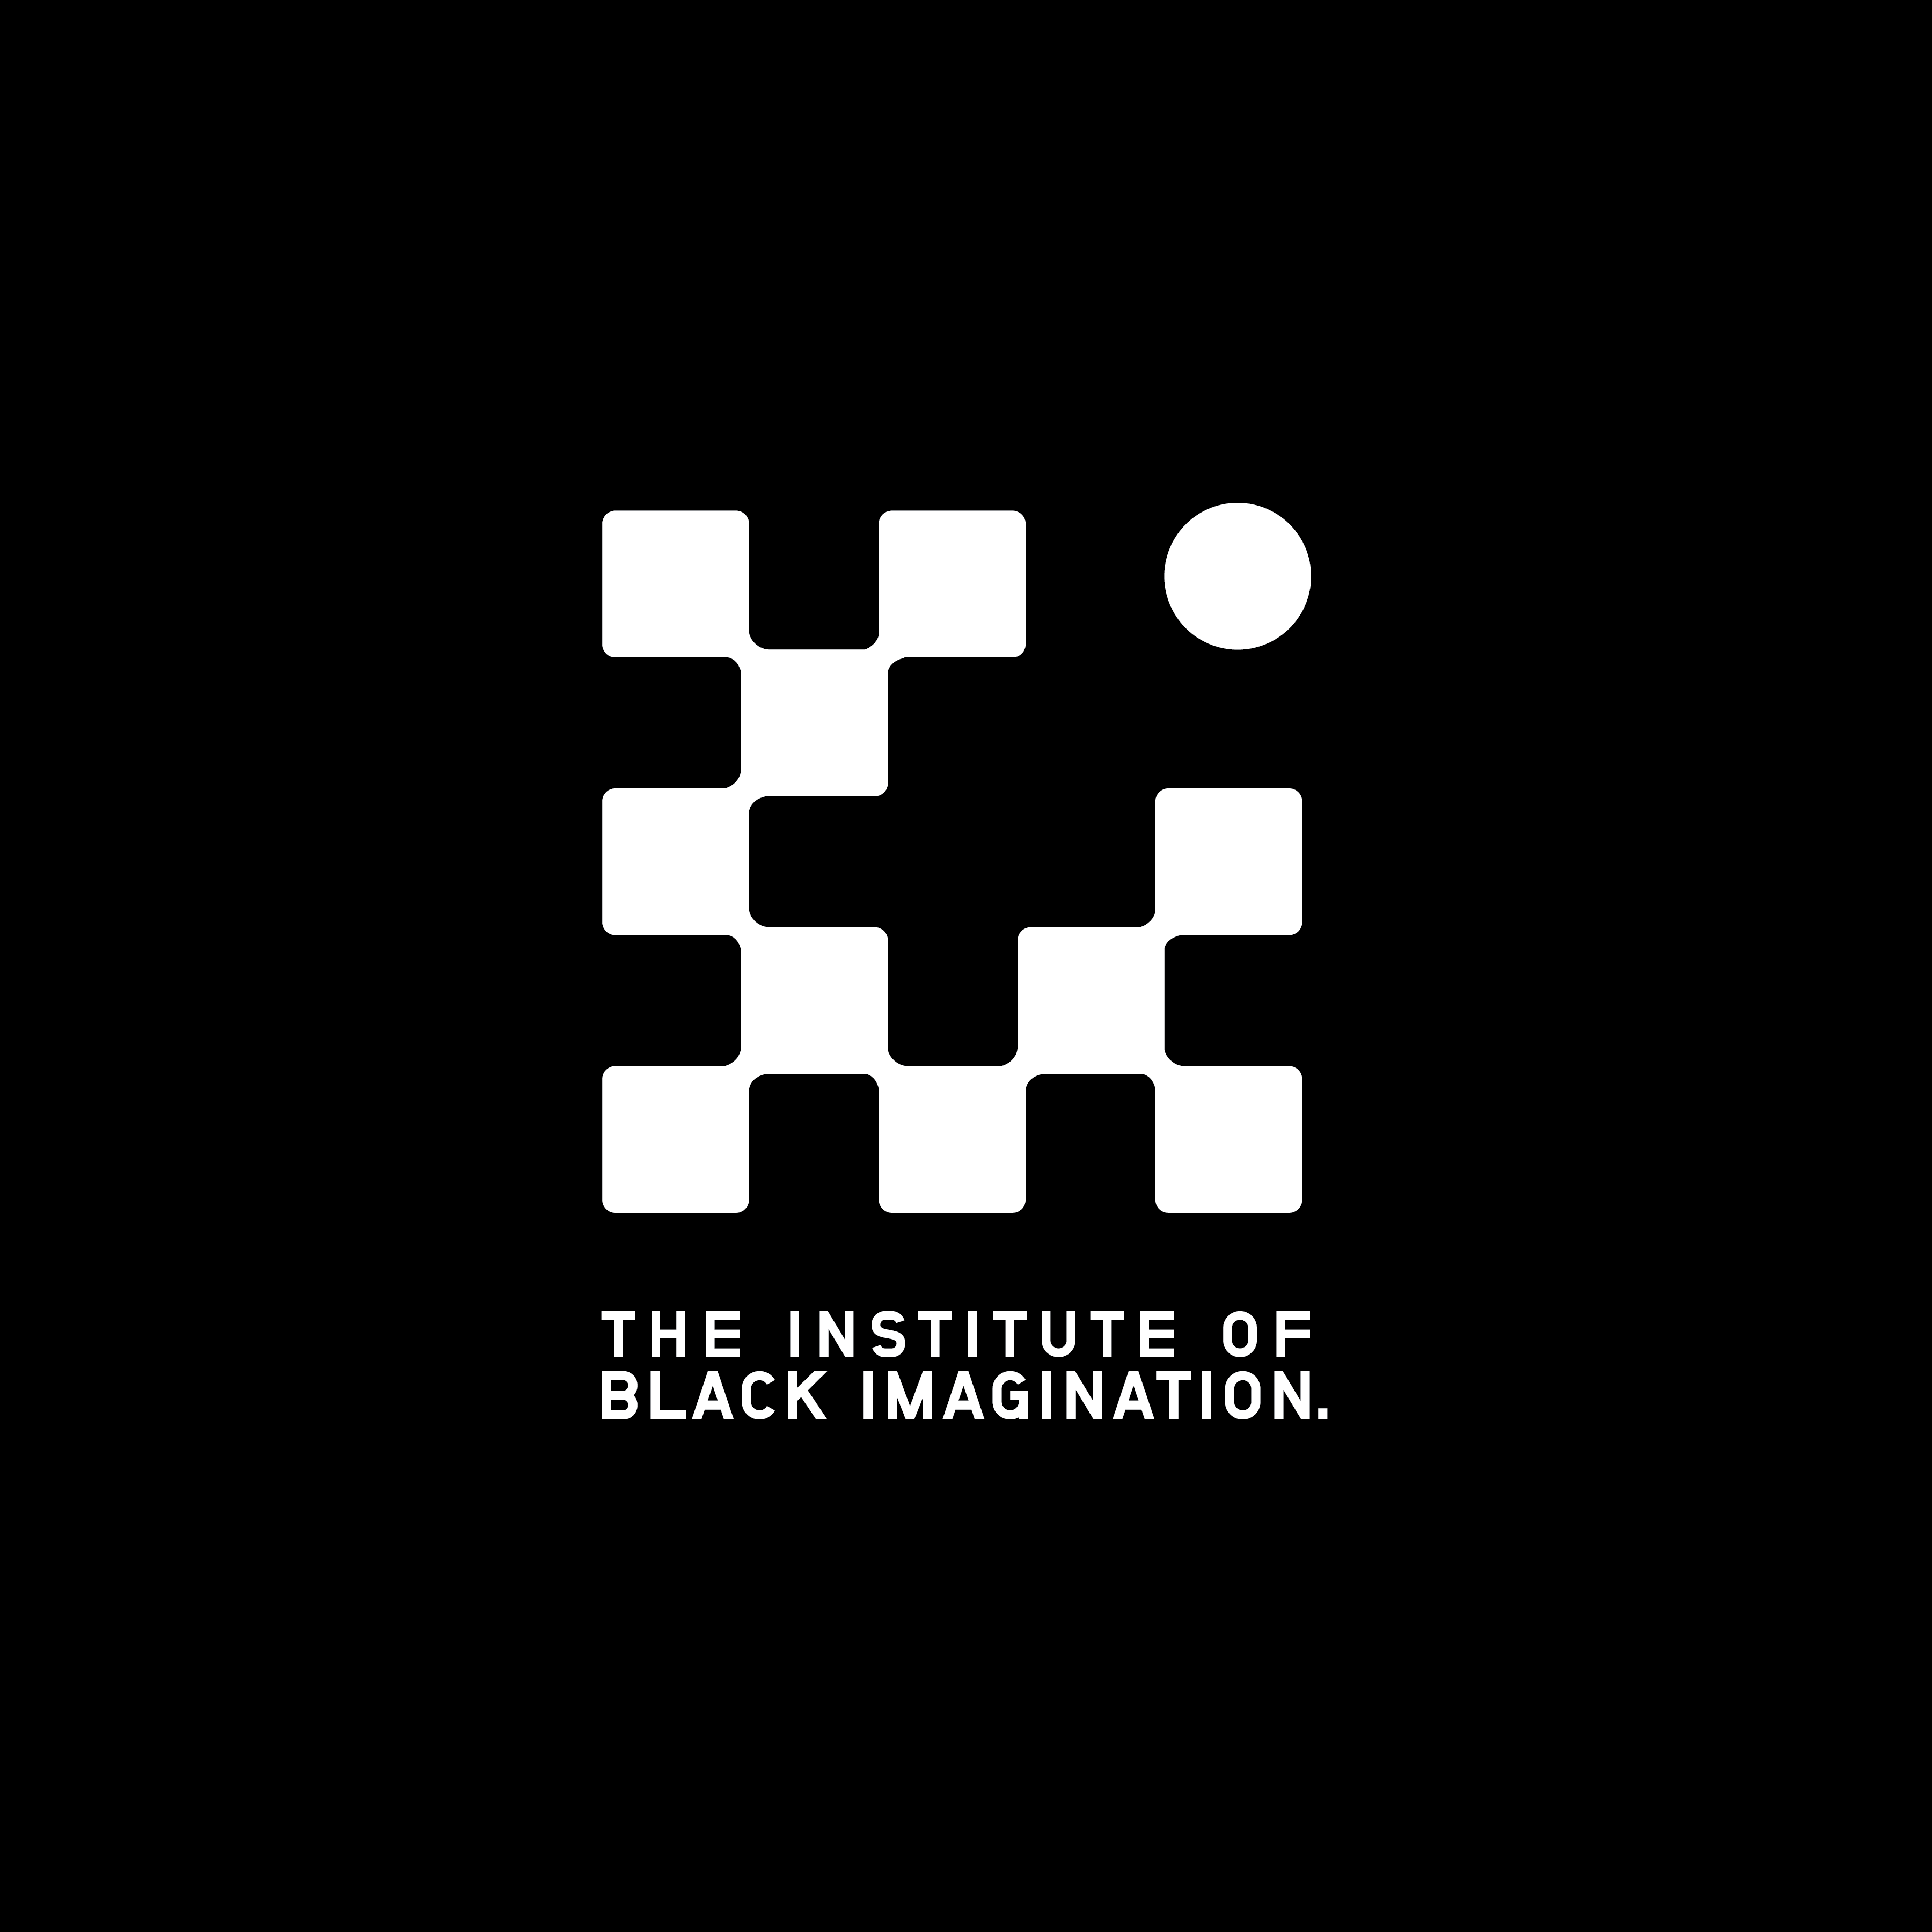 The Institute of Black Imagination logo